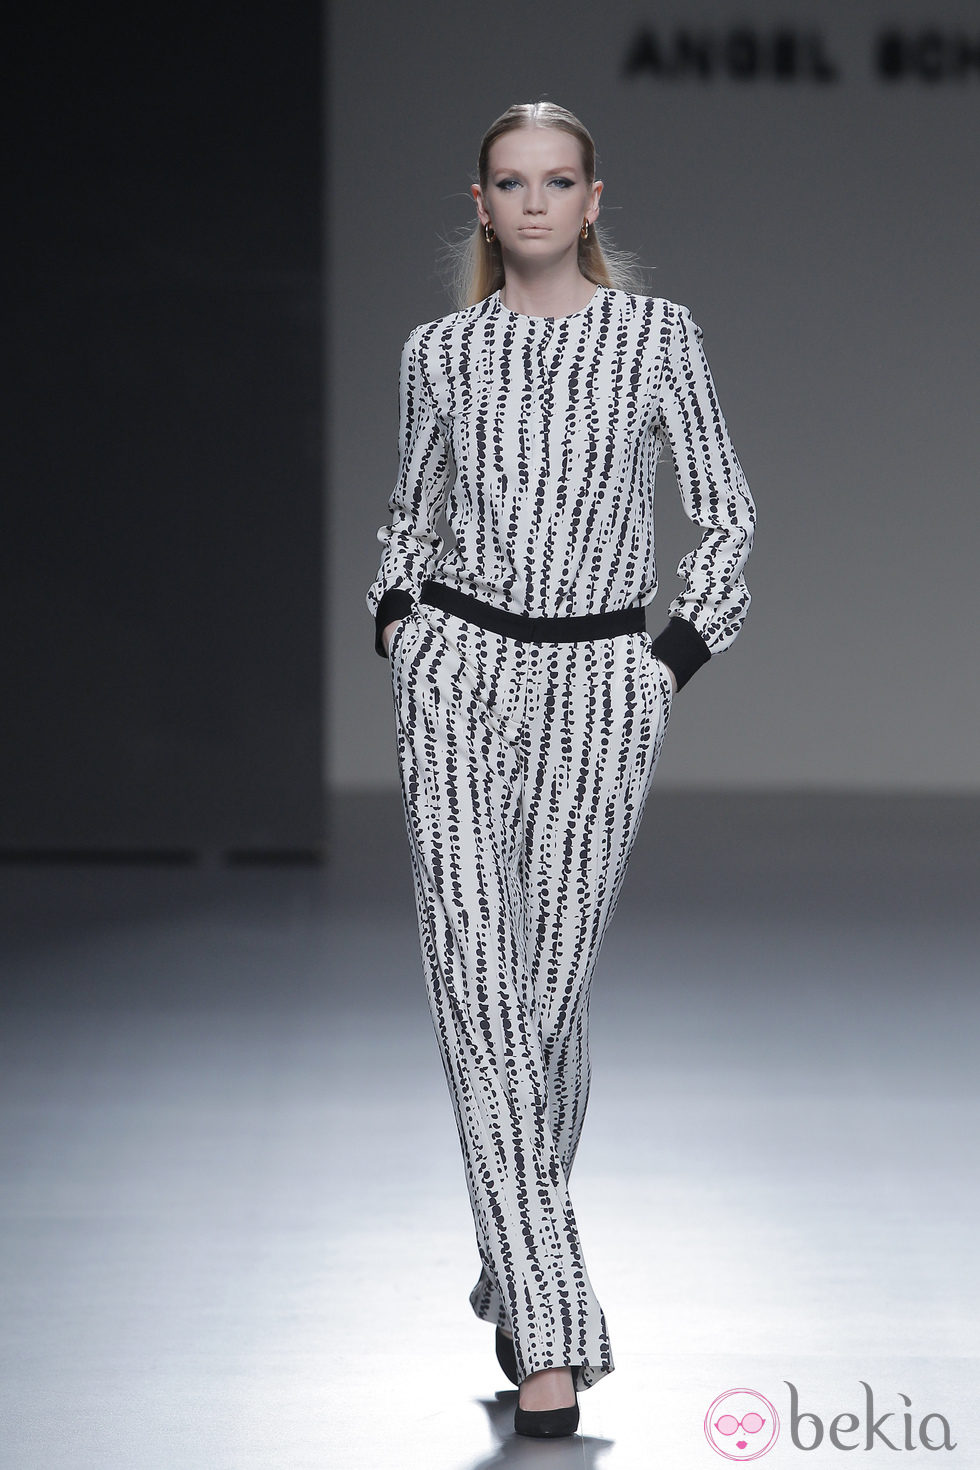 Mono blanco con geometrías negras de la colección otoño/invierno 2013/2014 de Ángel Schlesser en Madrid Fashion Week